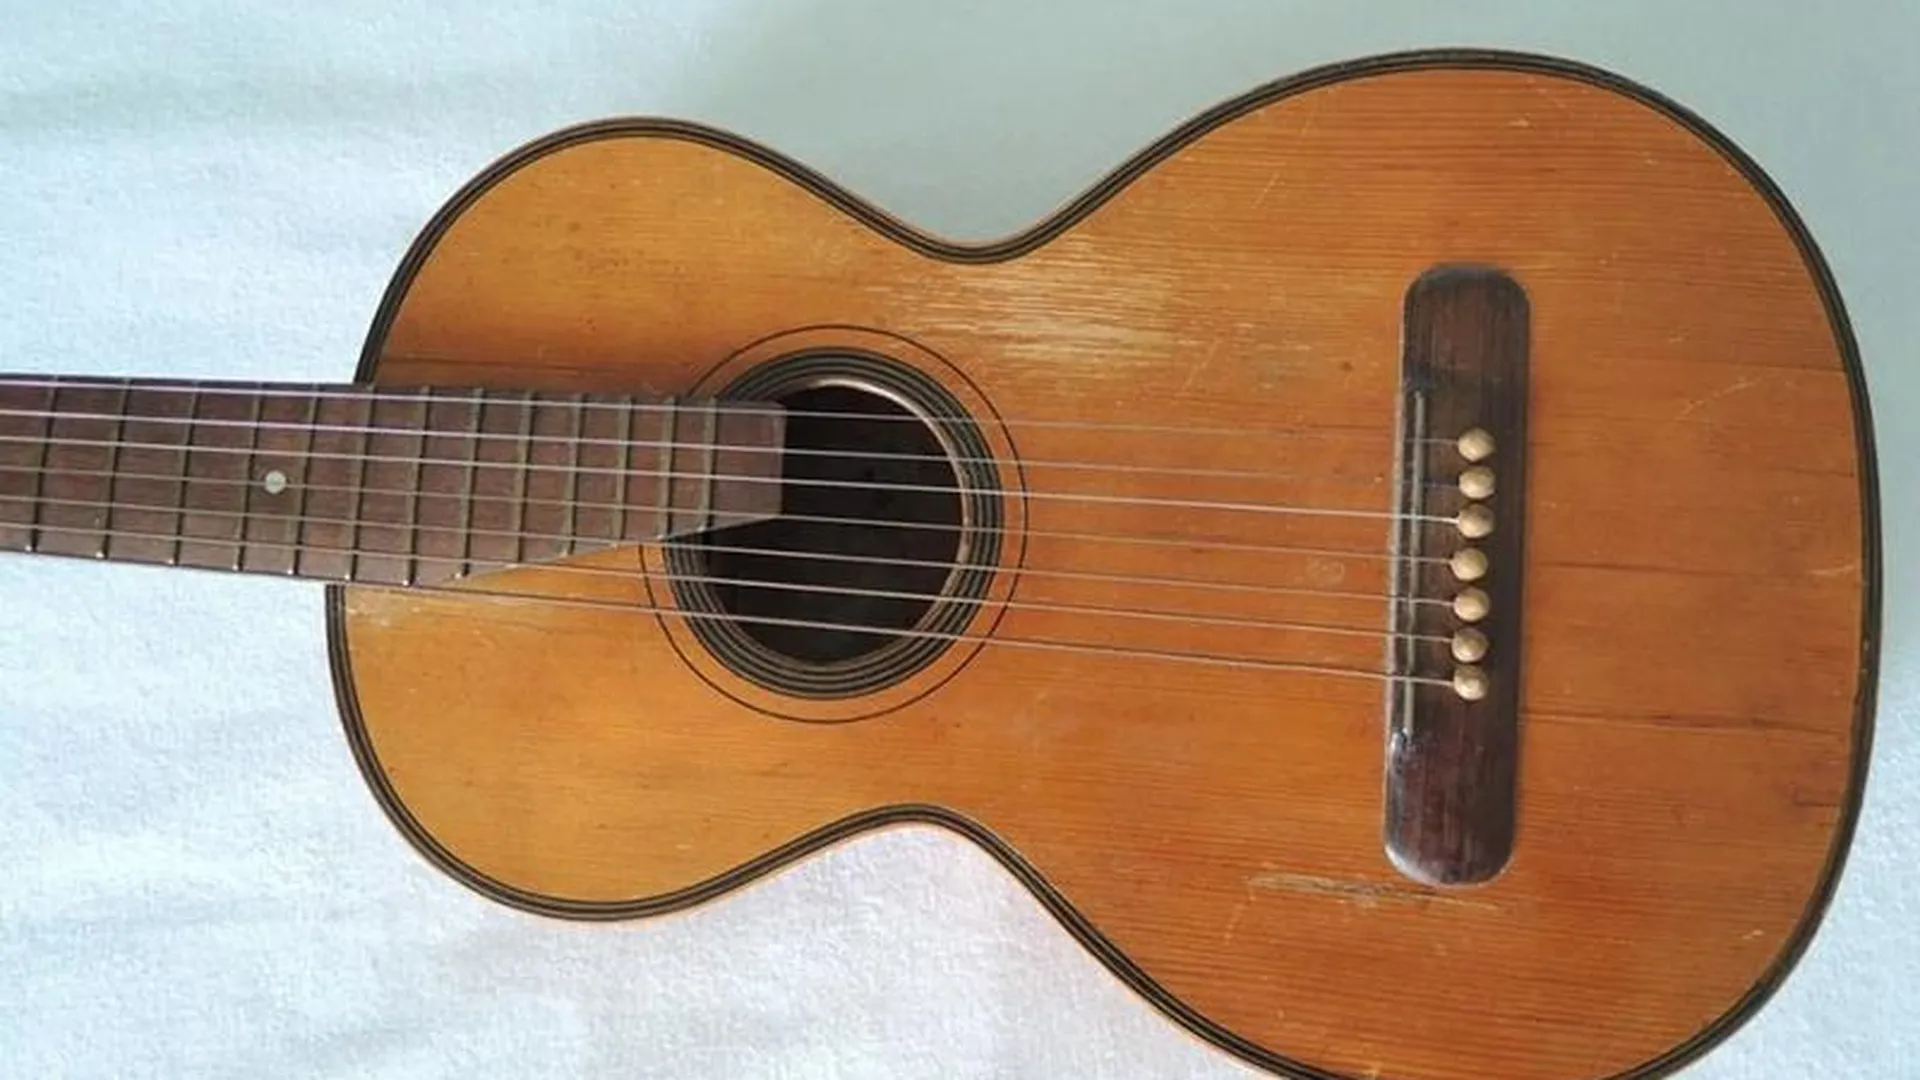 Раритетную гитару, сделанную руками прославленного мастера в середине XIX века, продают в Истре